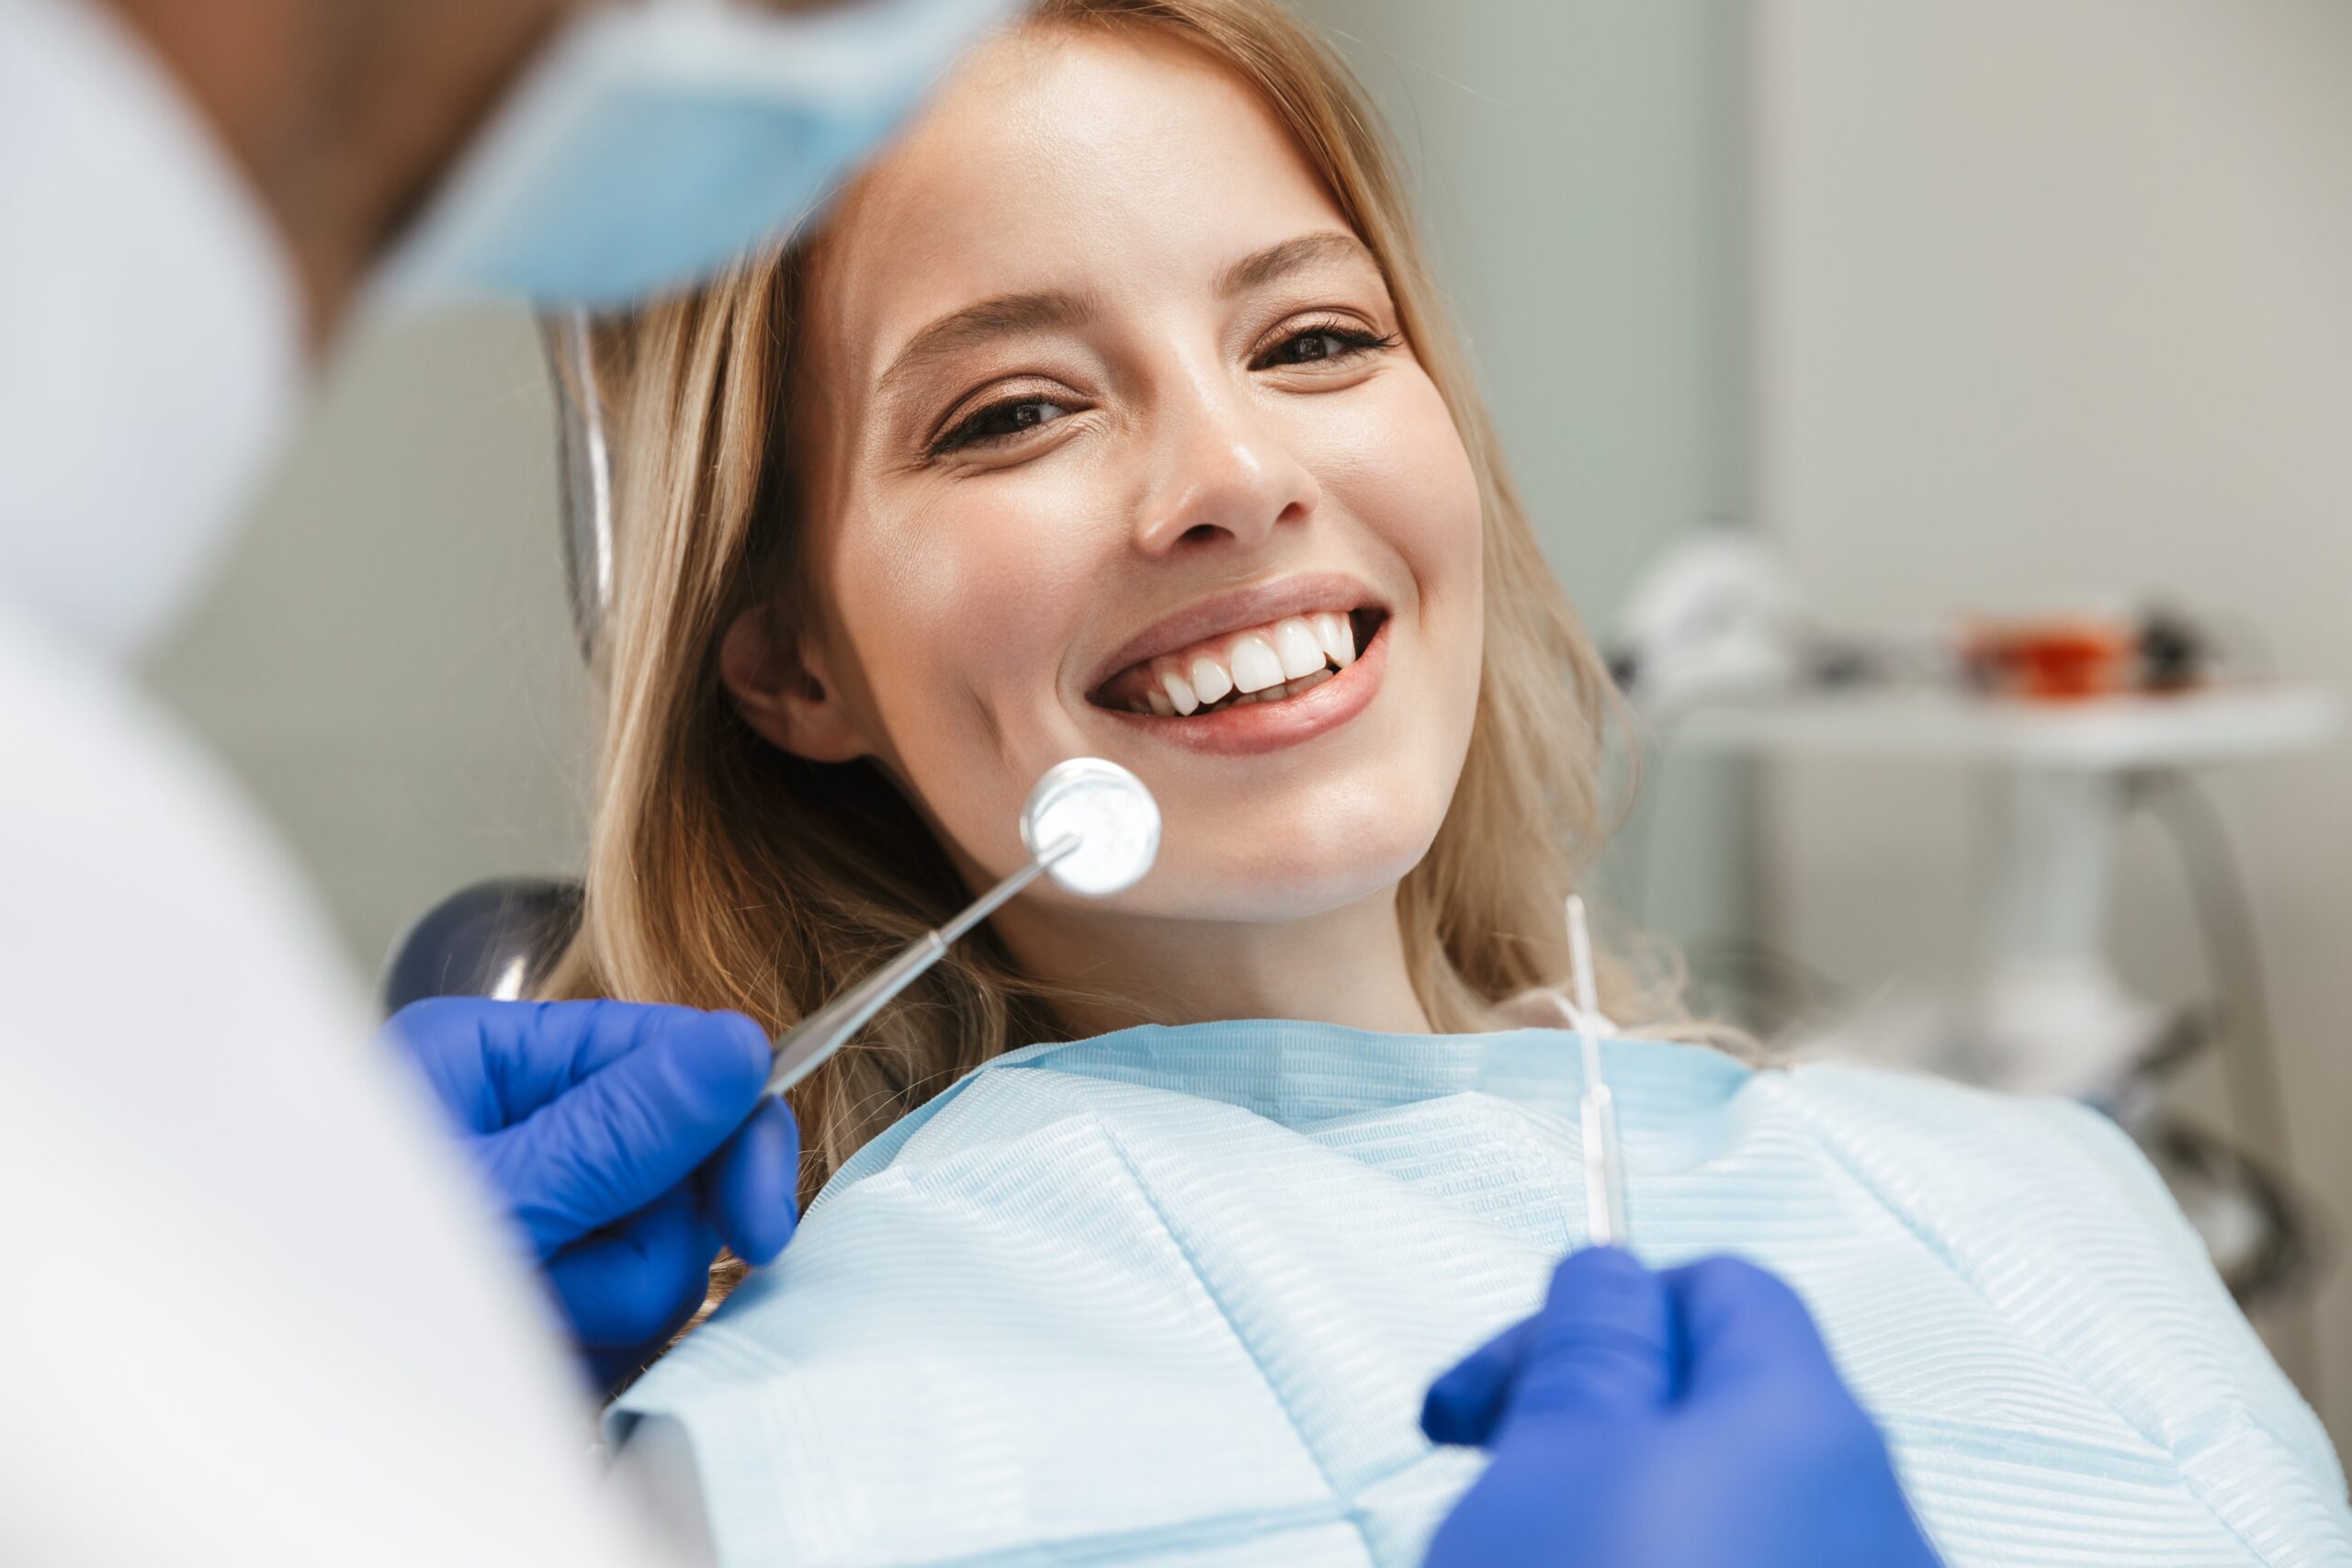 Consulta odontológica: qual a frequência ideal para ir ao dentista?